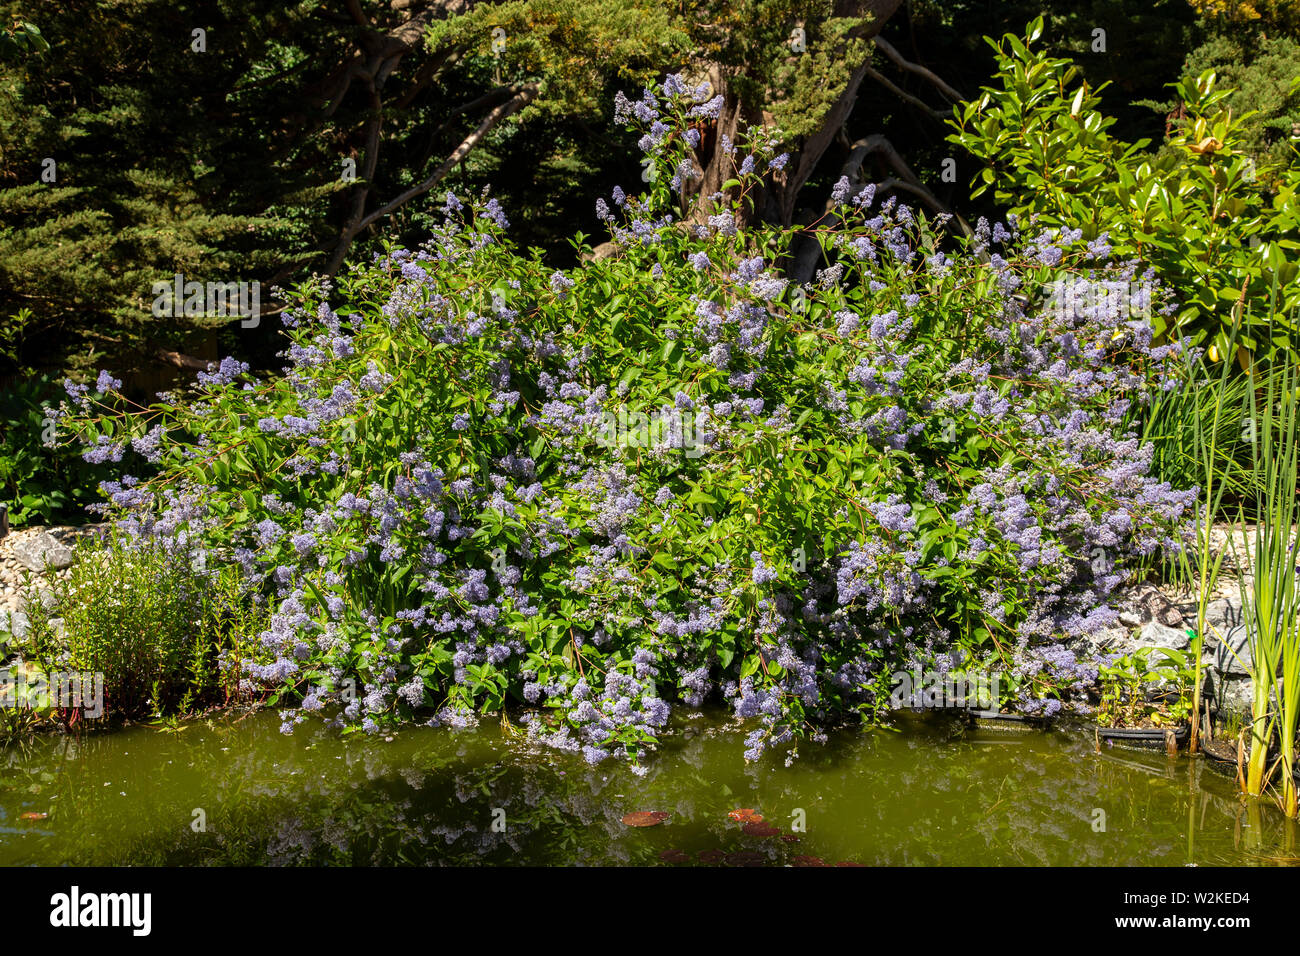 Ceanothus Gloire de Versailles growing on the bank of a garden pond in Devon. Stock Photo